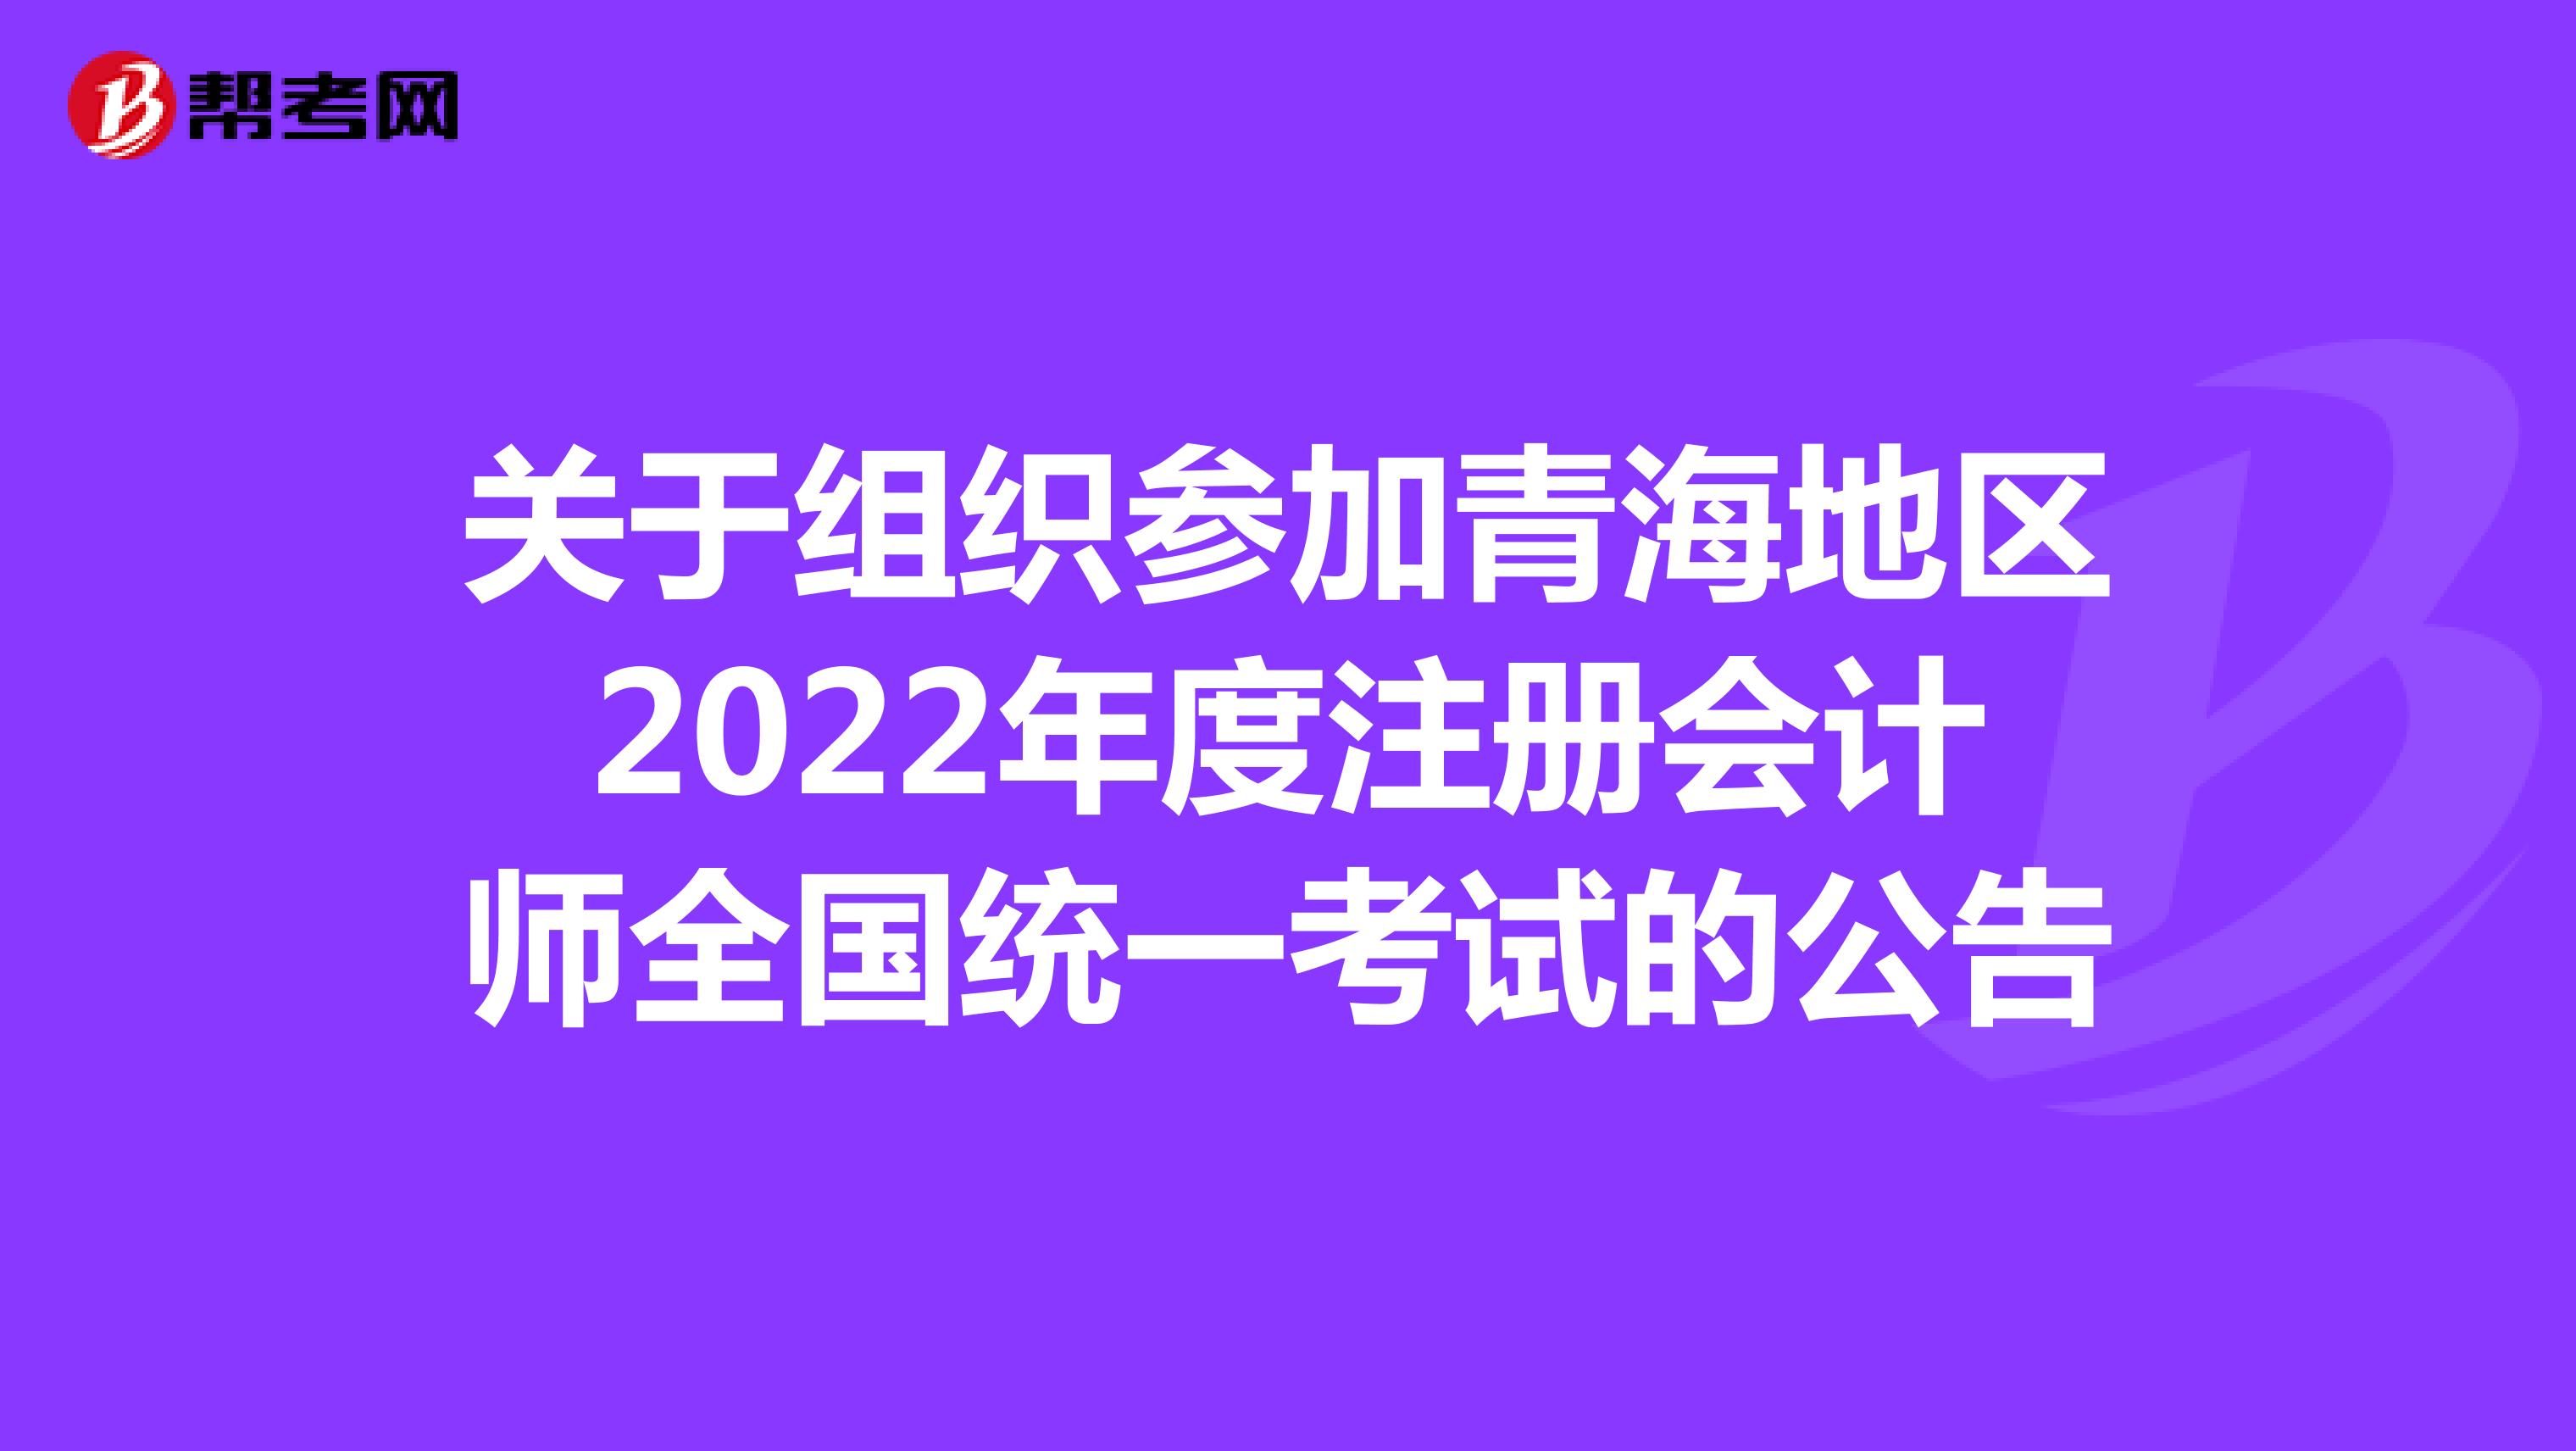 关于组织参加青海地区2022年度注册会计师全国统一考试的公告